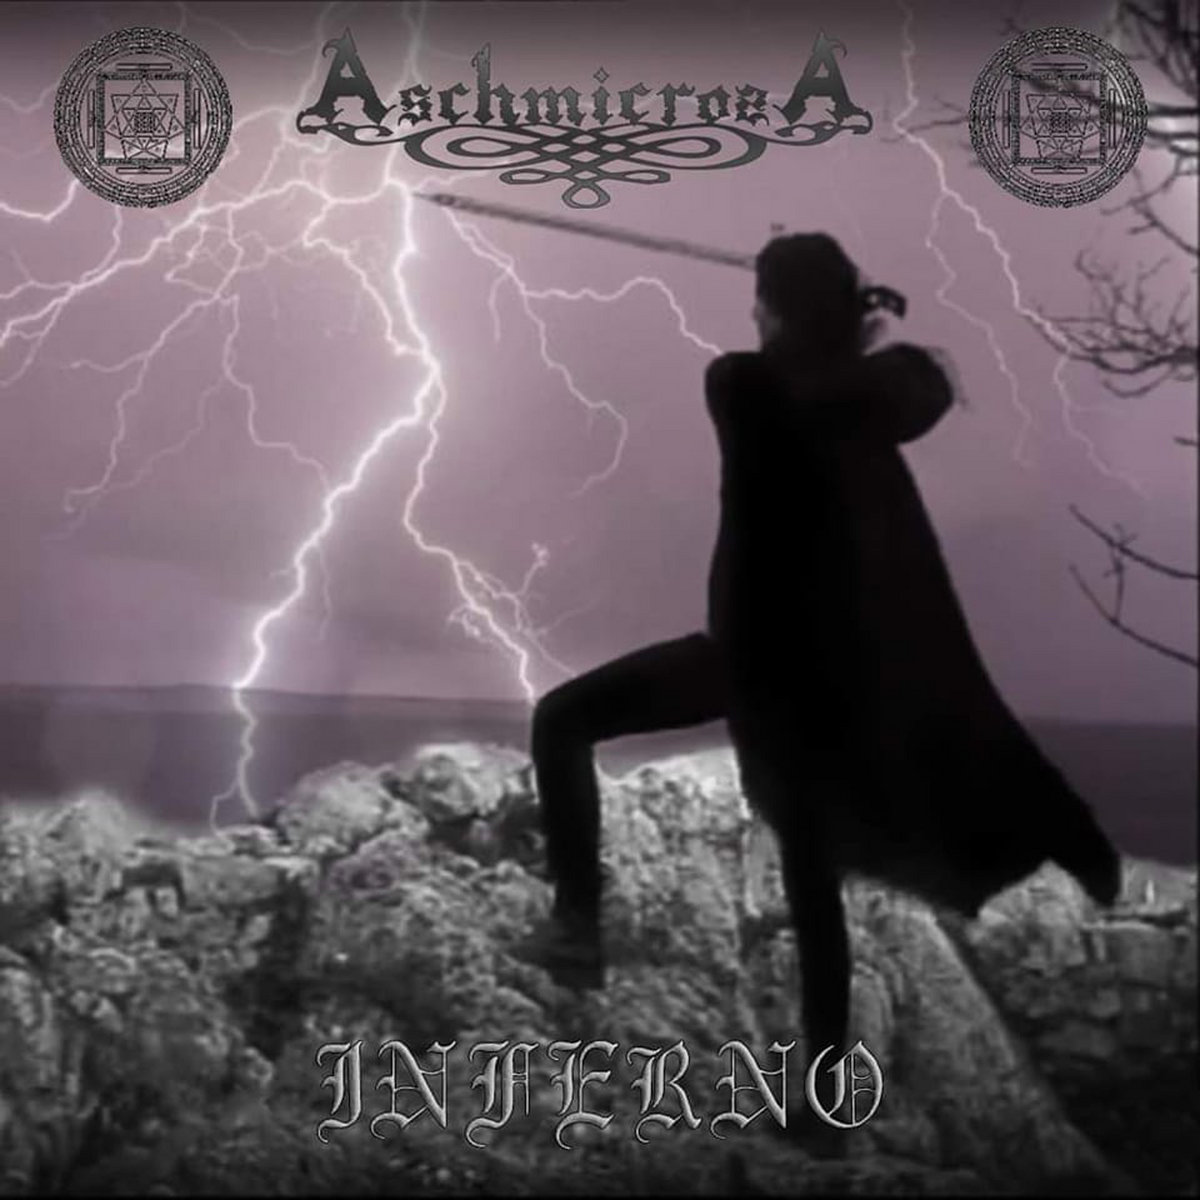 Aschmicrosa - "Inferno" - 2023